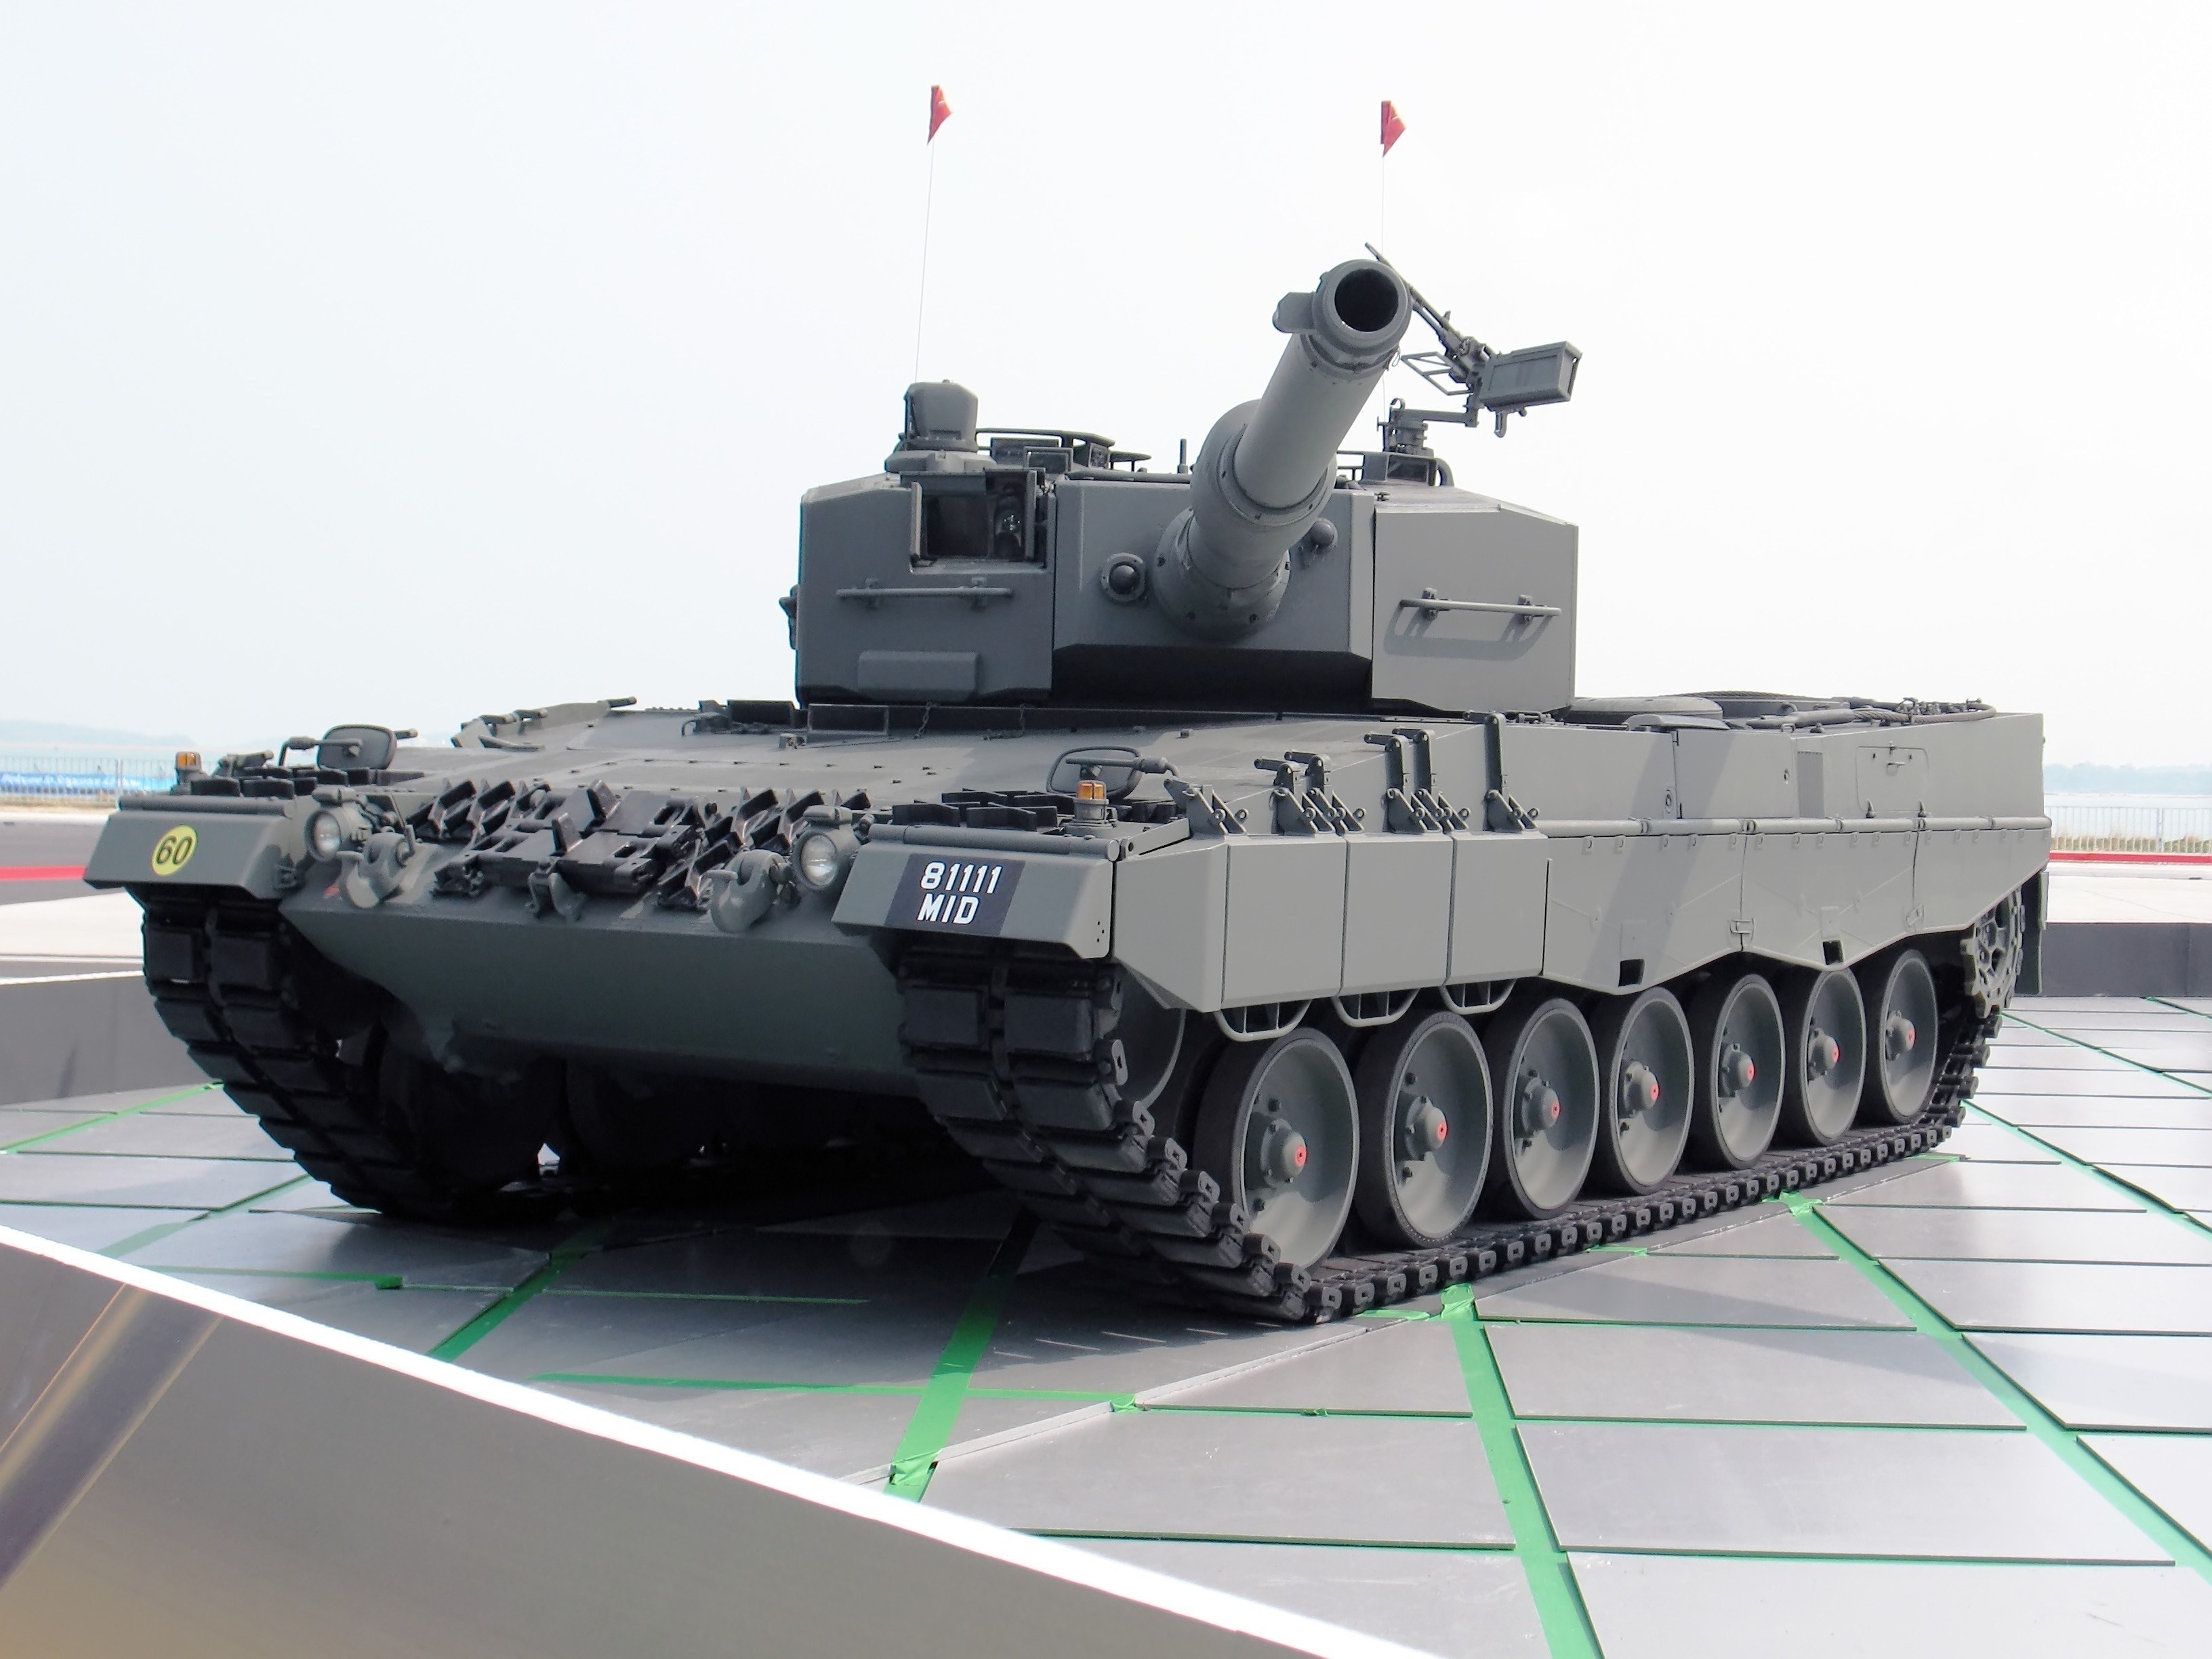 Leopard 2 Tank 3264x2448